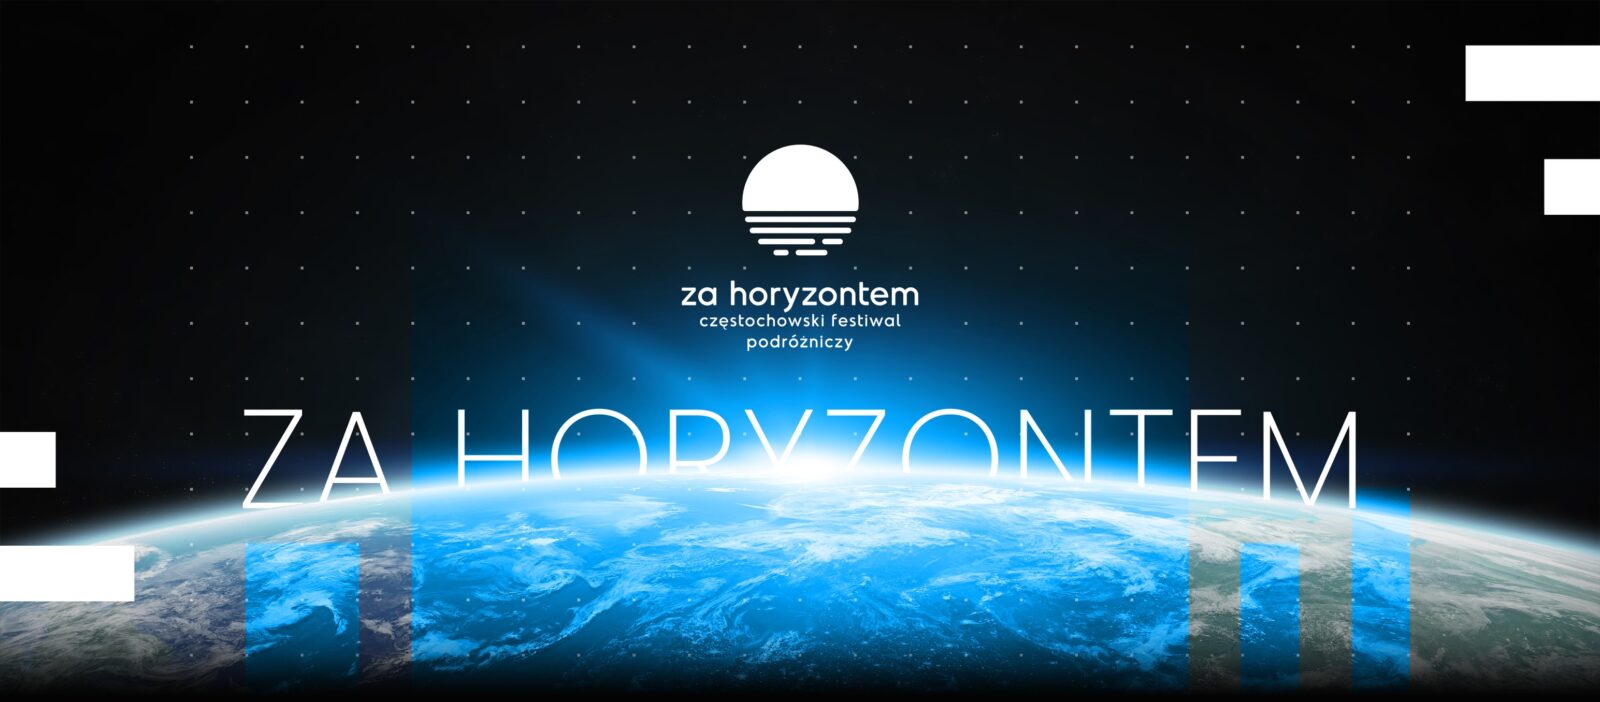 5 maja startuje Częstochowski Festiwal Podróżniczy "Za Horyzontem" 6